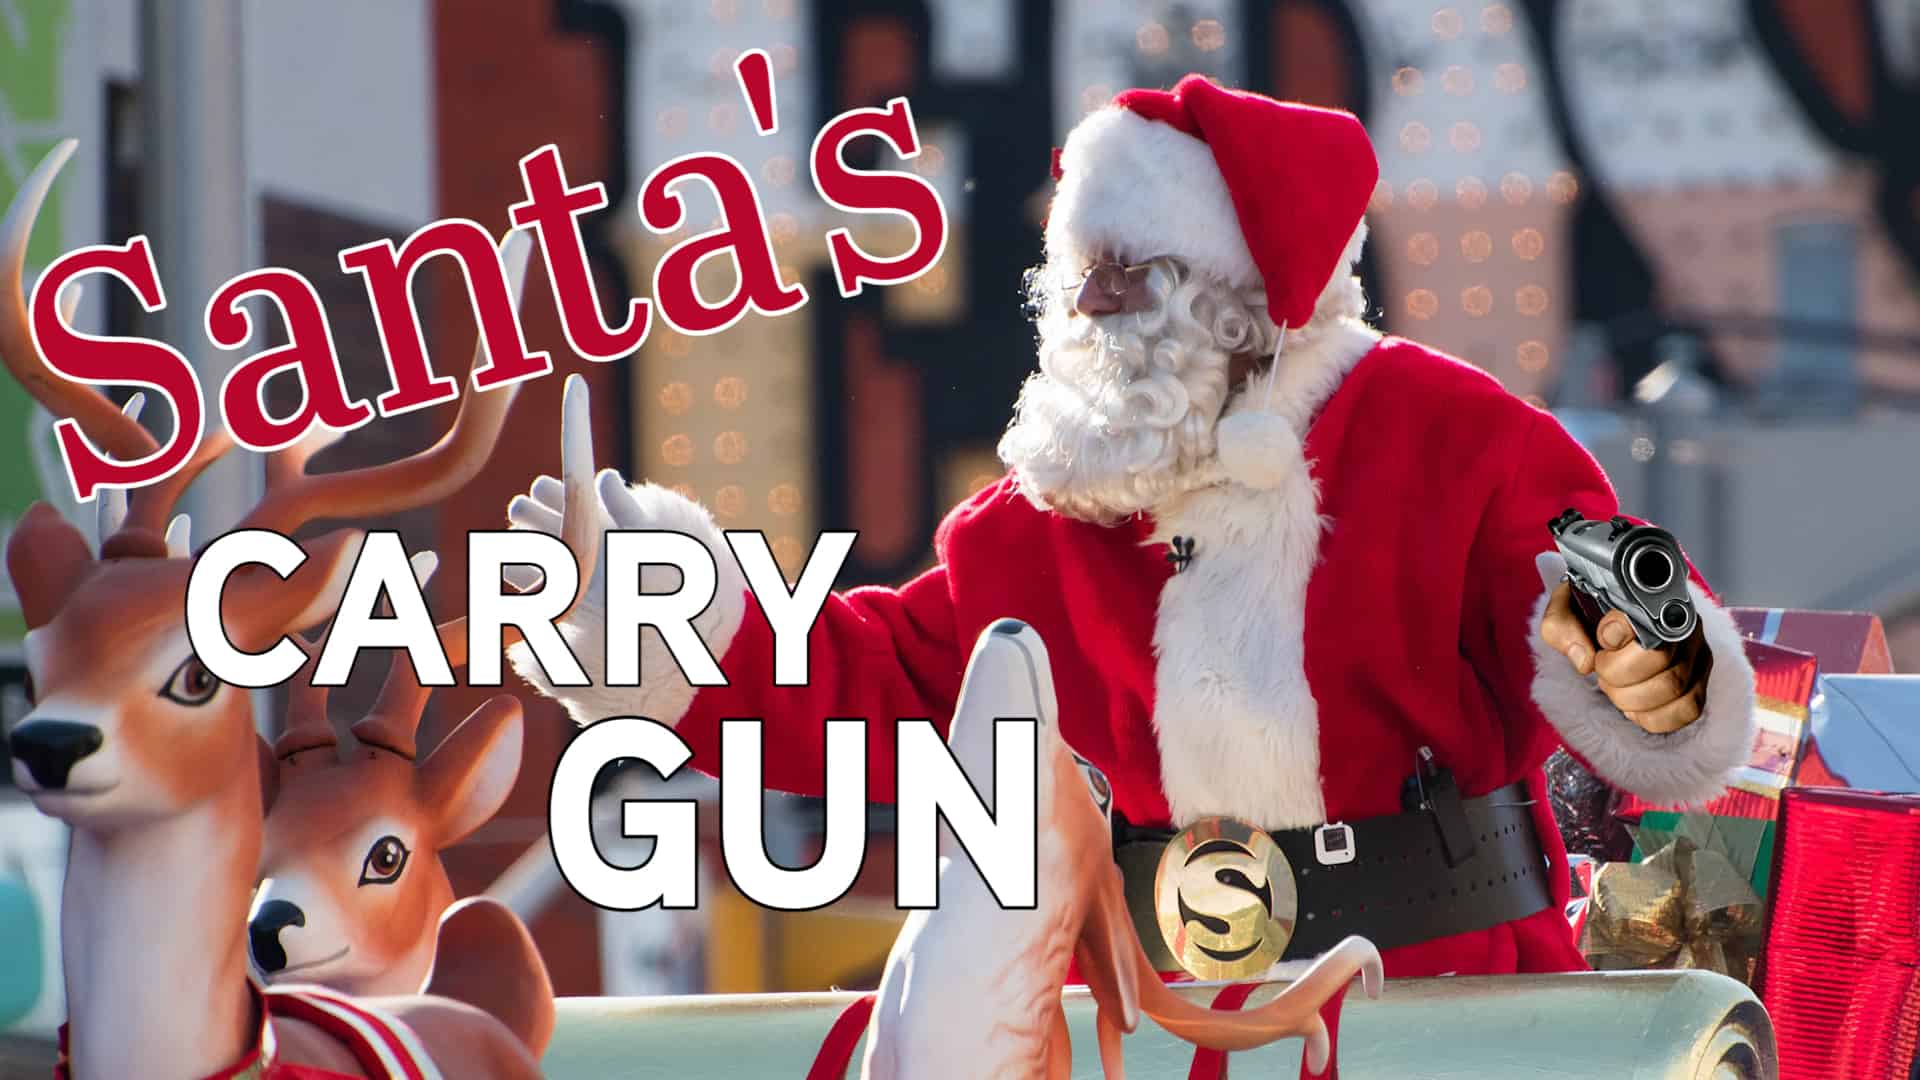 Santa's carry gun